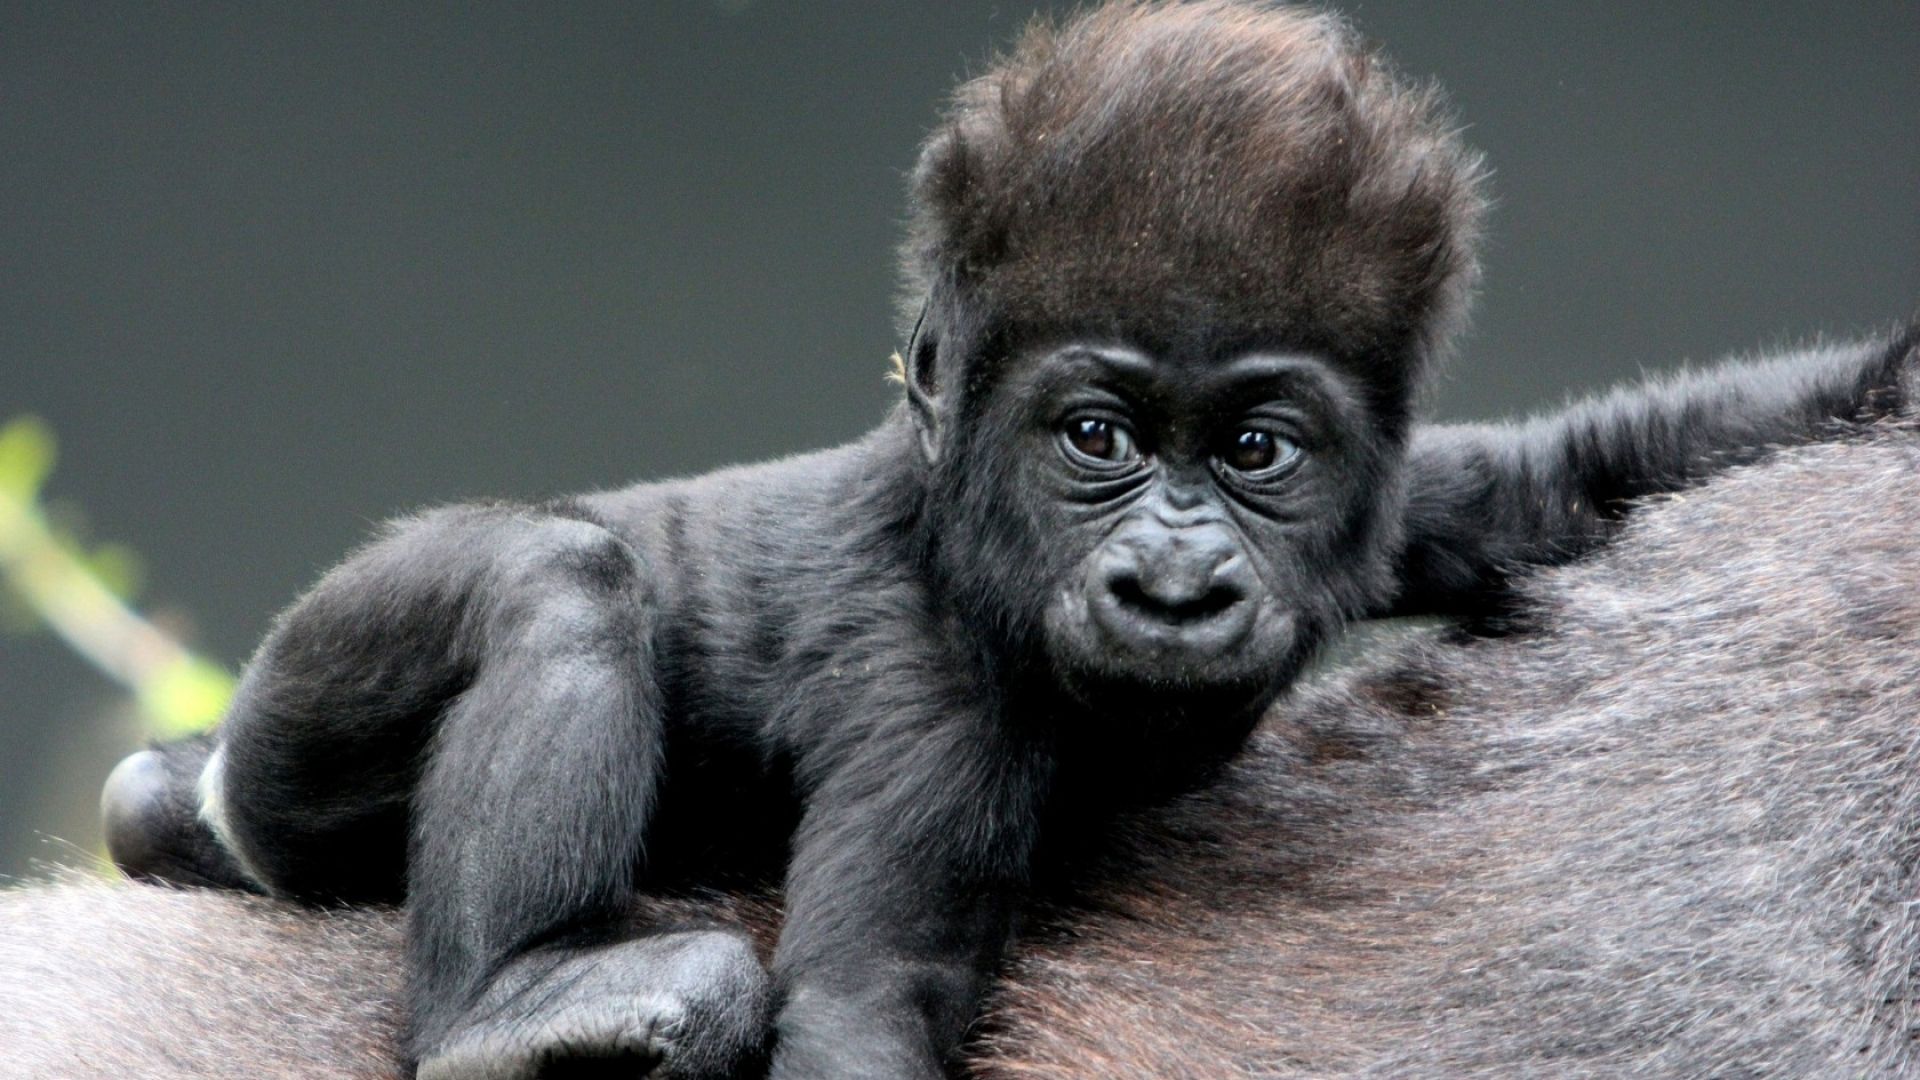 The Baby Gorilla